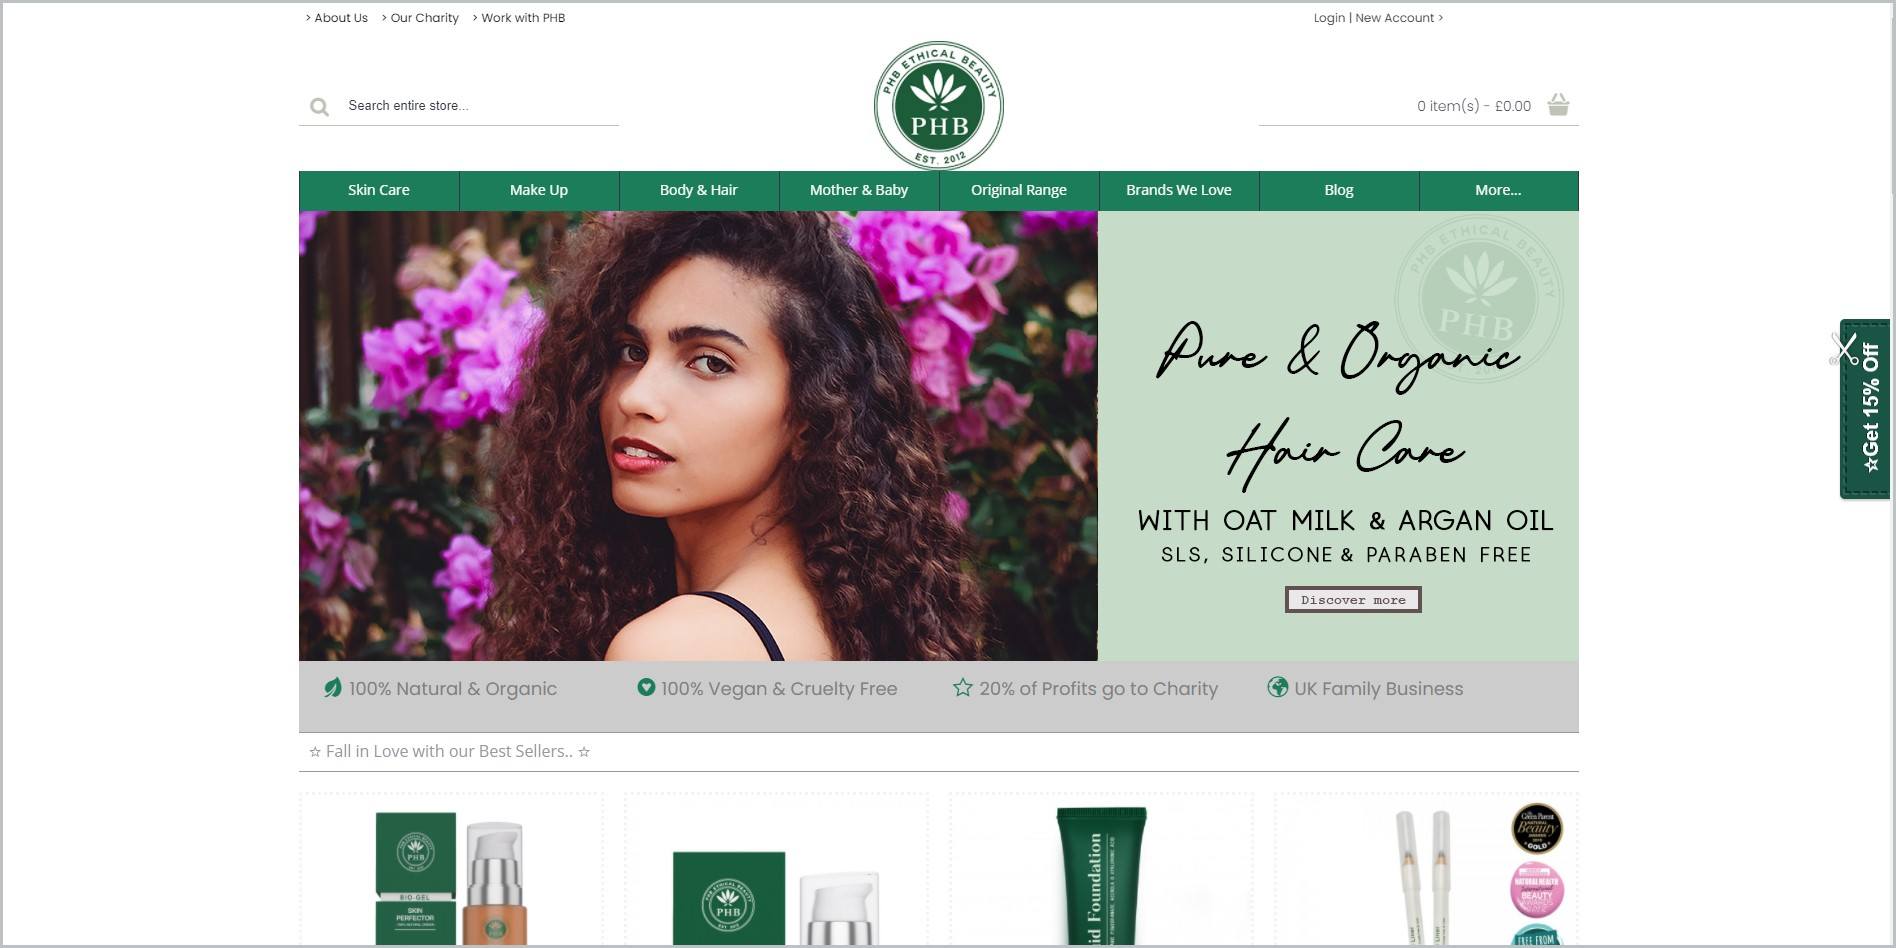 PHB Ethical Beauty网站的截图，白色的标题是网站的名称和标志，下面是绿色的主导航栏，它还展示了一个女人的形象以及网站的一些产品